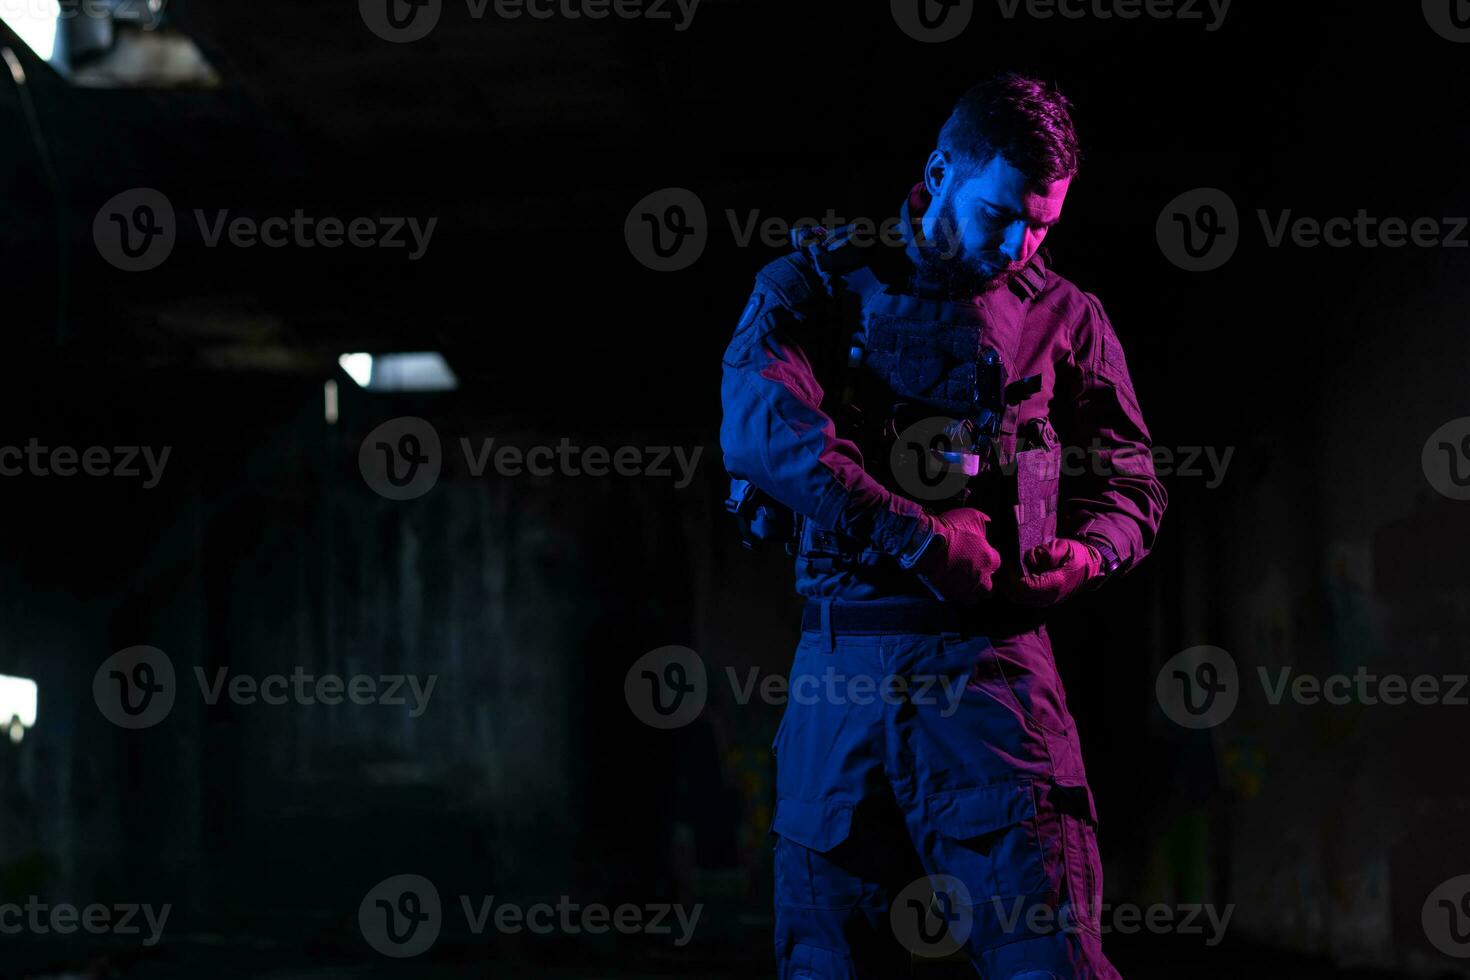 armén soldat i bekämpa uniformer med ett överfall gevär och bekämpa hjälm natt uppdrag mörk bakgrund. blå och lila gel ljus effekt. foto